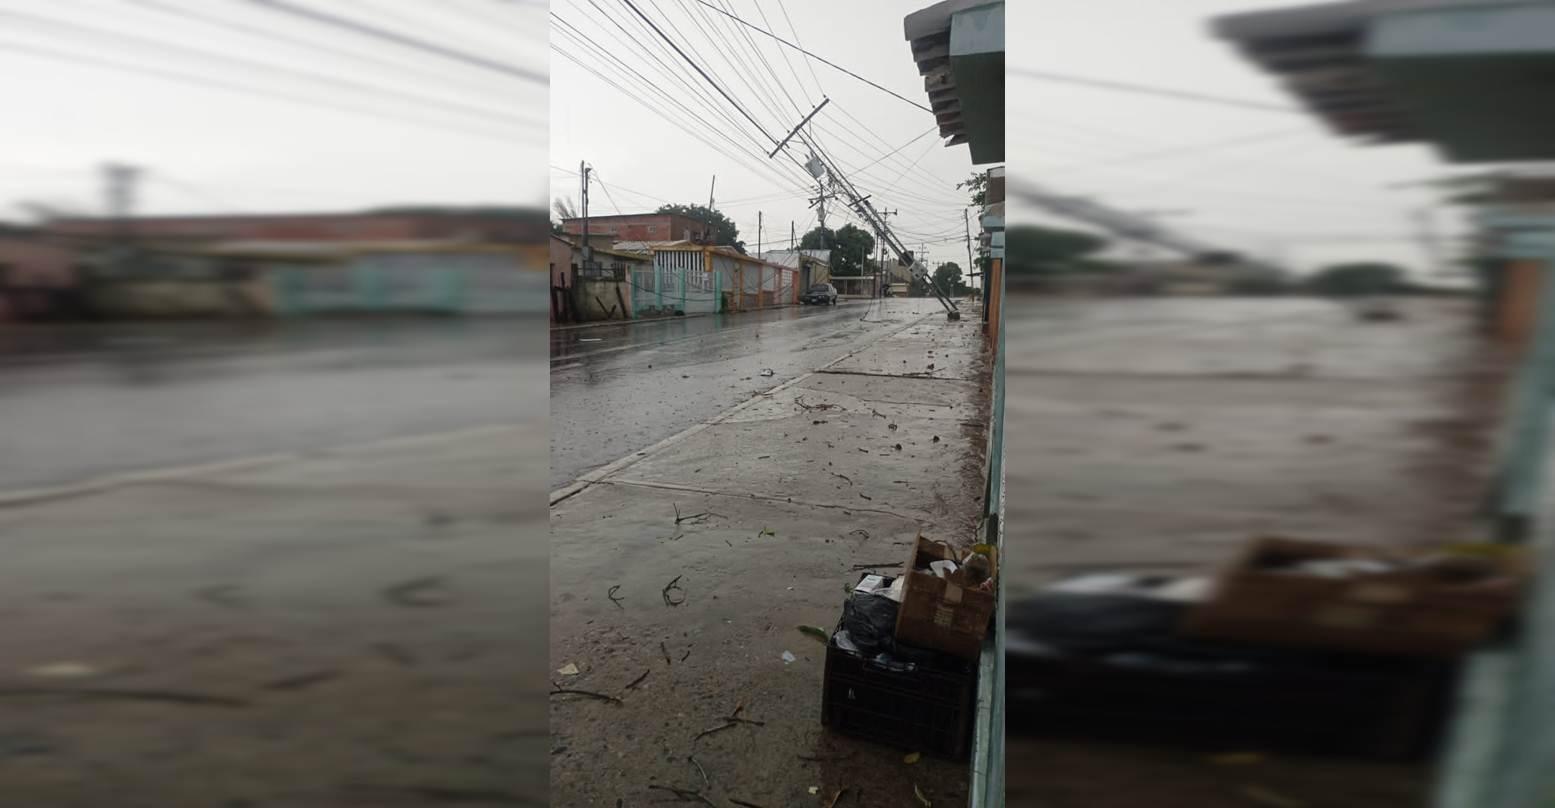 ¡VIDRIERAS DE TIENDAS TRAKI EN LOS HATICOS TAMBIÉN ESTALLARON! Vientos huracanados dejan a varias familias sin electricidad en el barrio el progreso de la parroquia Cristo de Aranza